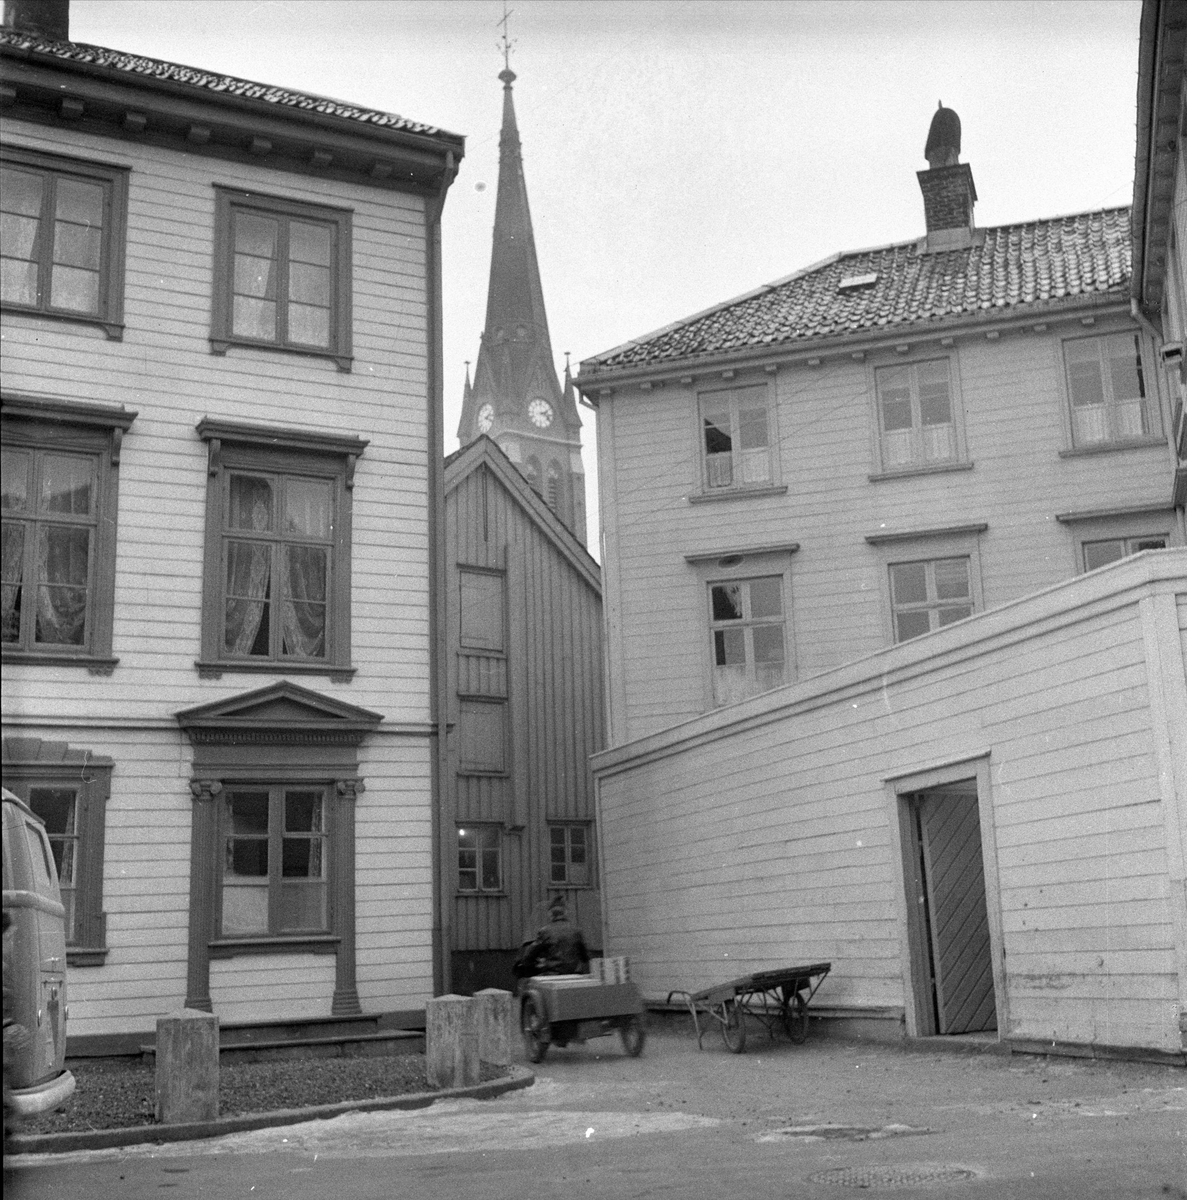 Arendal, desember 1957. Bybilde, fra Tyholmen med Trefoldighetskirken i bakgrunnen.